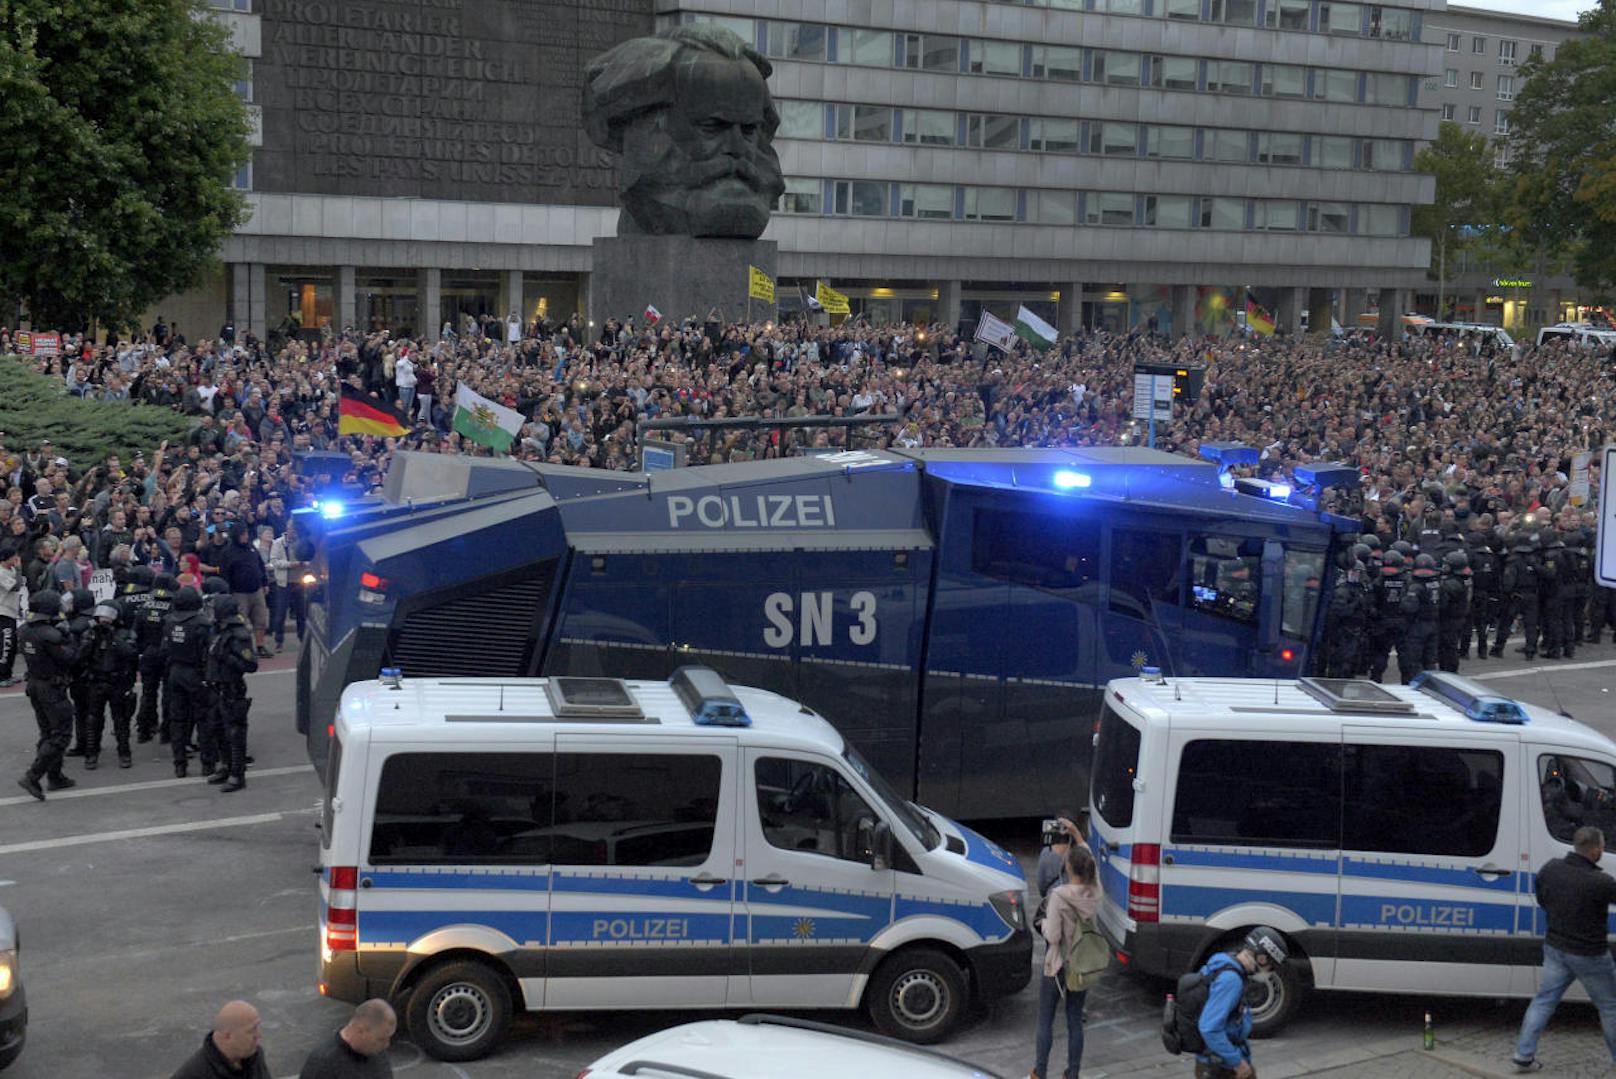 Einen Tag nach Übergriffen auf Ausländer in Chemnitz hat die Polizei versucht, ein Aufeinanderprallen von rechten und linken Gruppen zu verhindern.